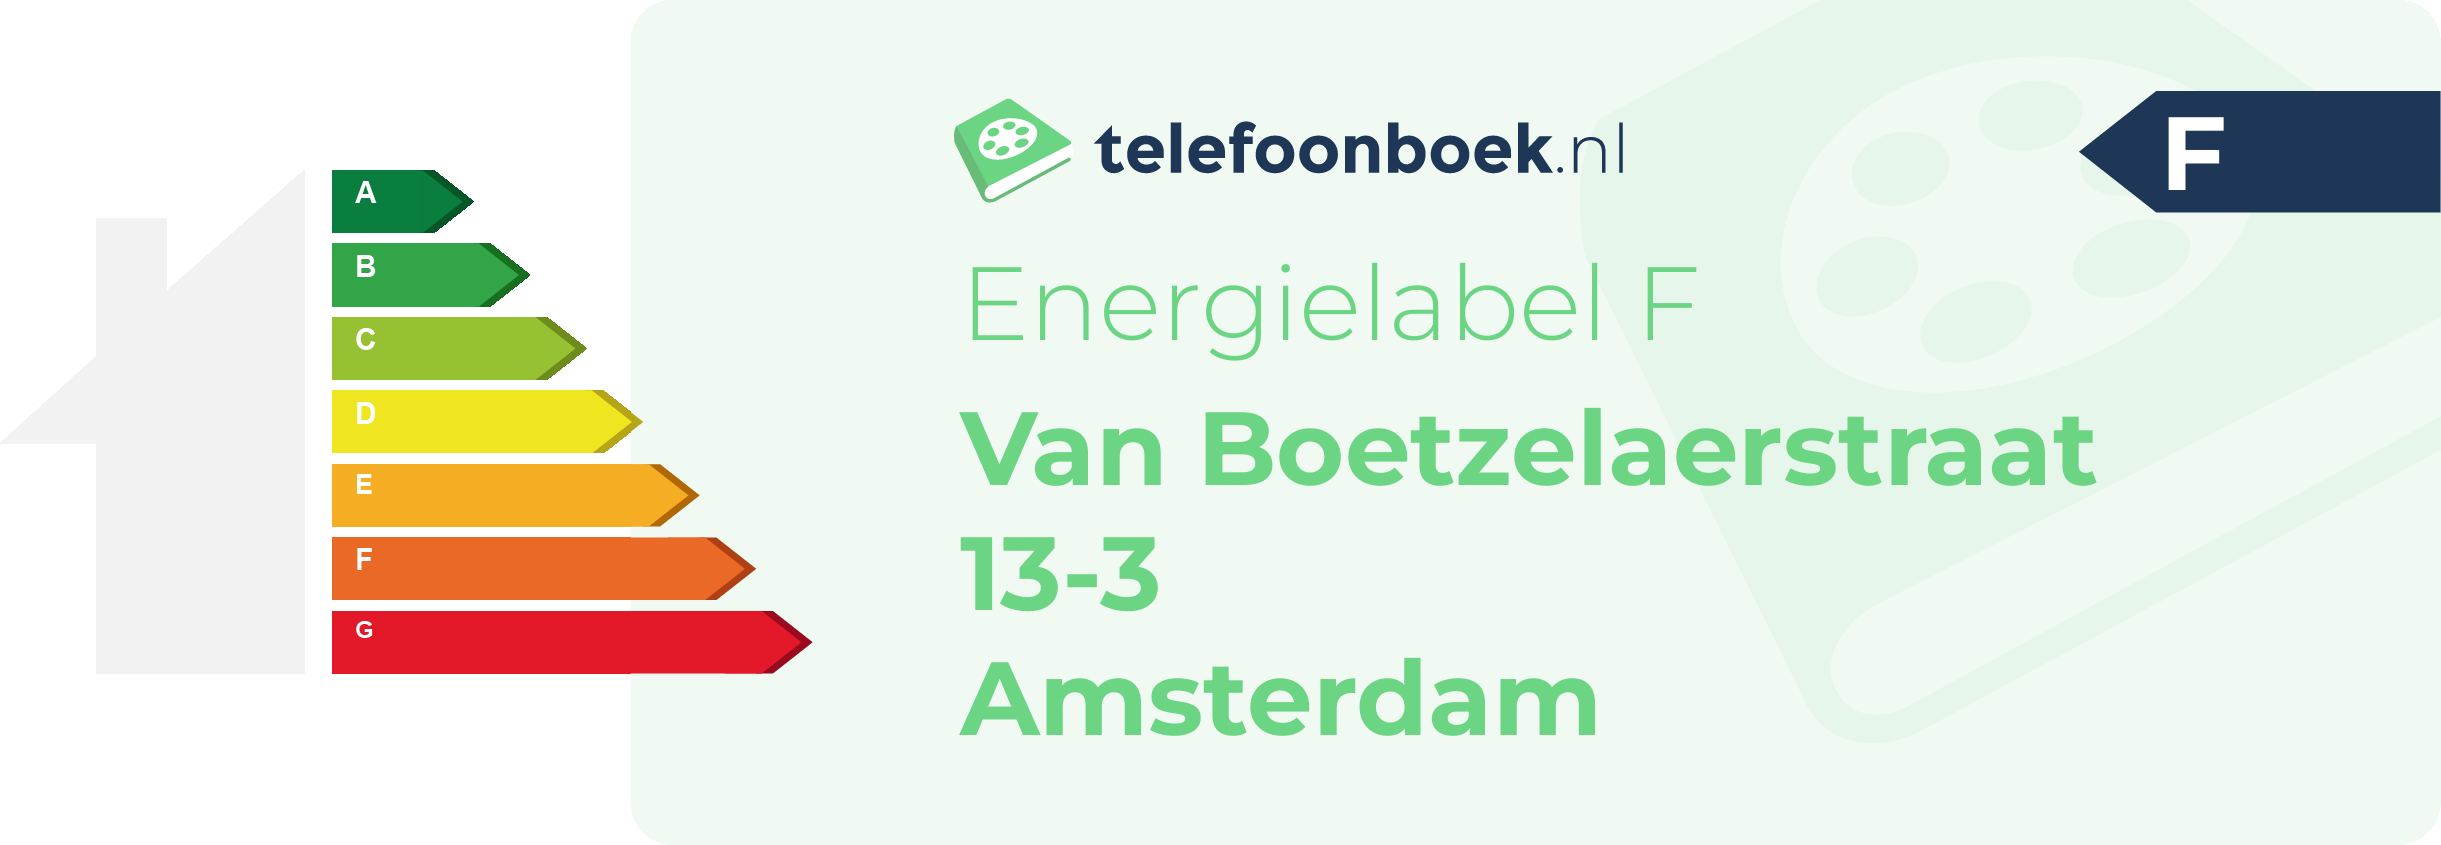 Energielabel Van Boetzelaerstraat 13-3 Amsterdam